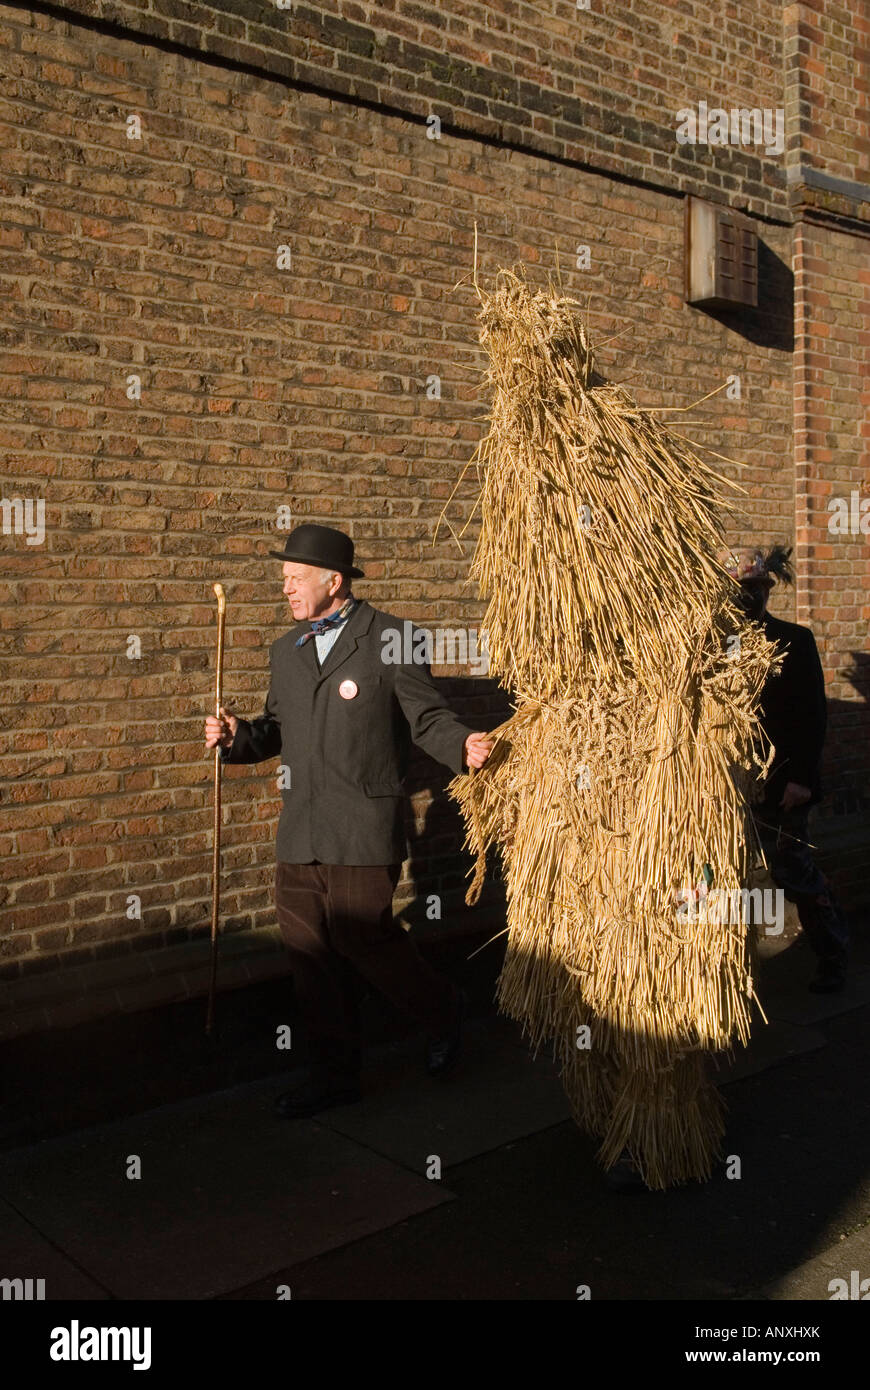 Événement folklorique annuel de l'Angleterre en janvier. Straw Bear Festival Whittlesea Whittlesey. Paille Bear et manipulateur. Cambridgeshire UK années 2008 2000 HOMER SYKES Banque D'Images